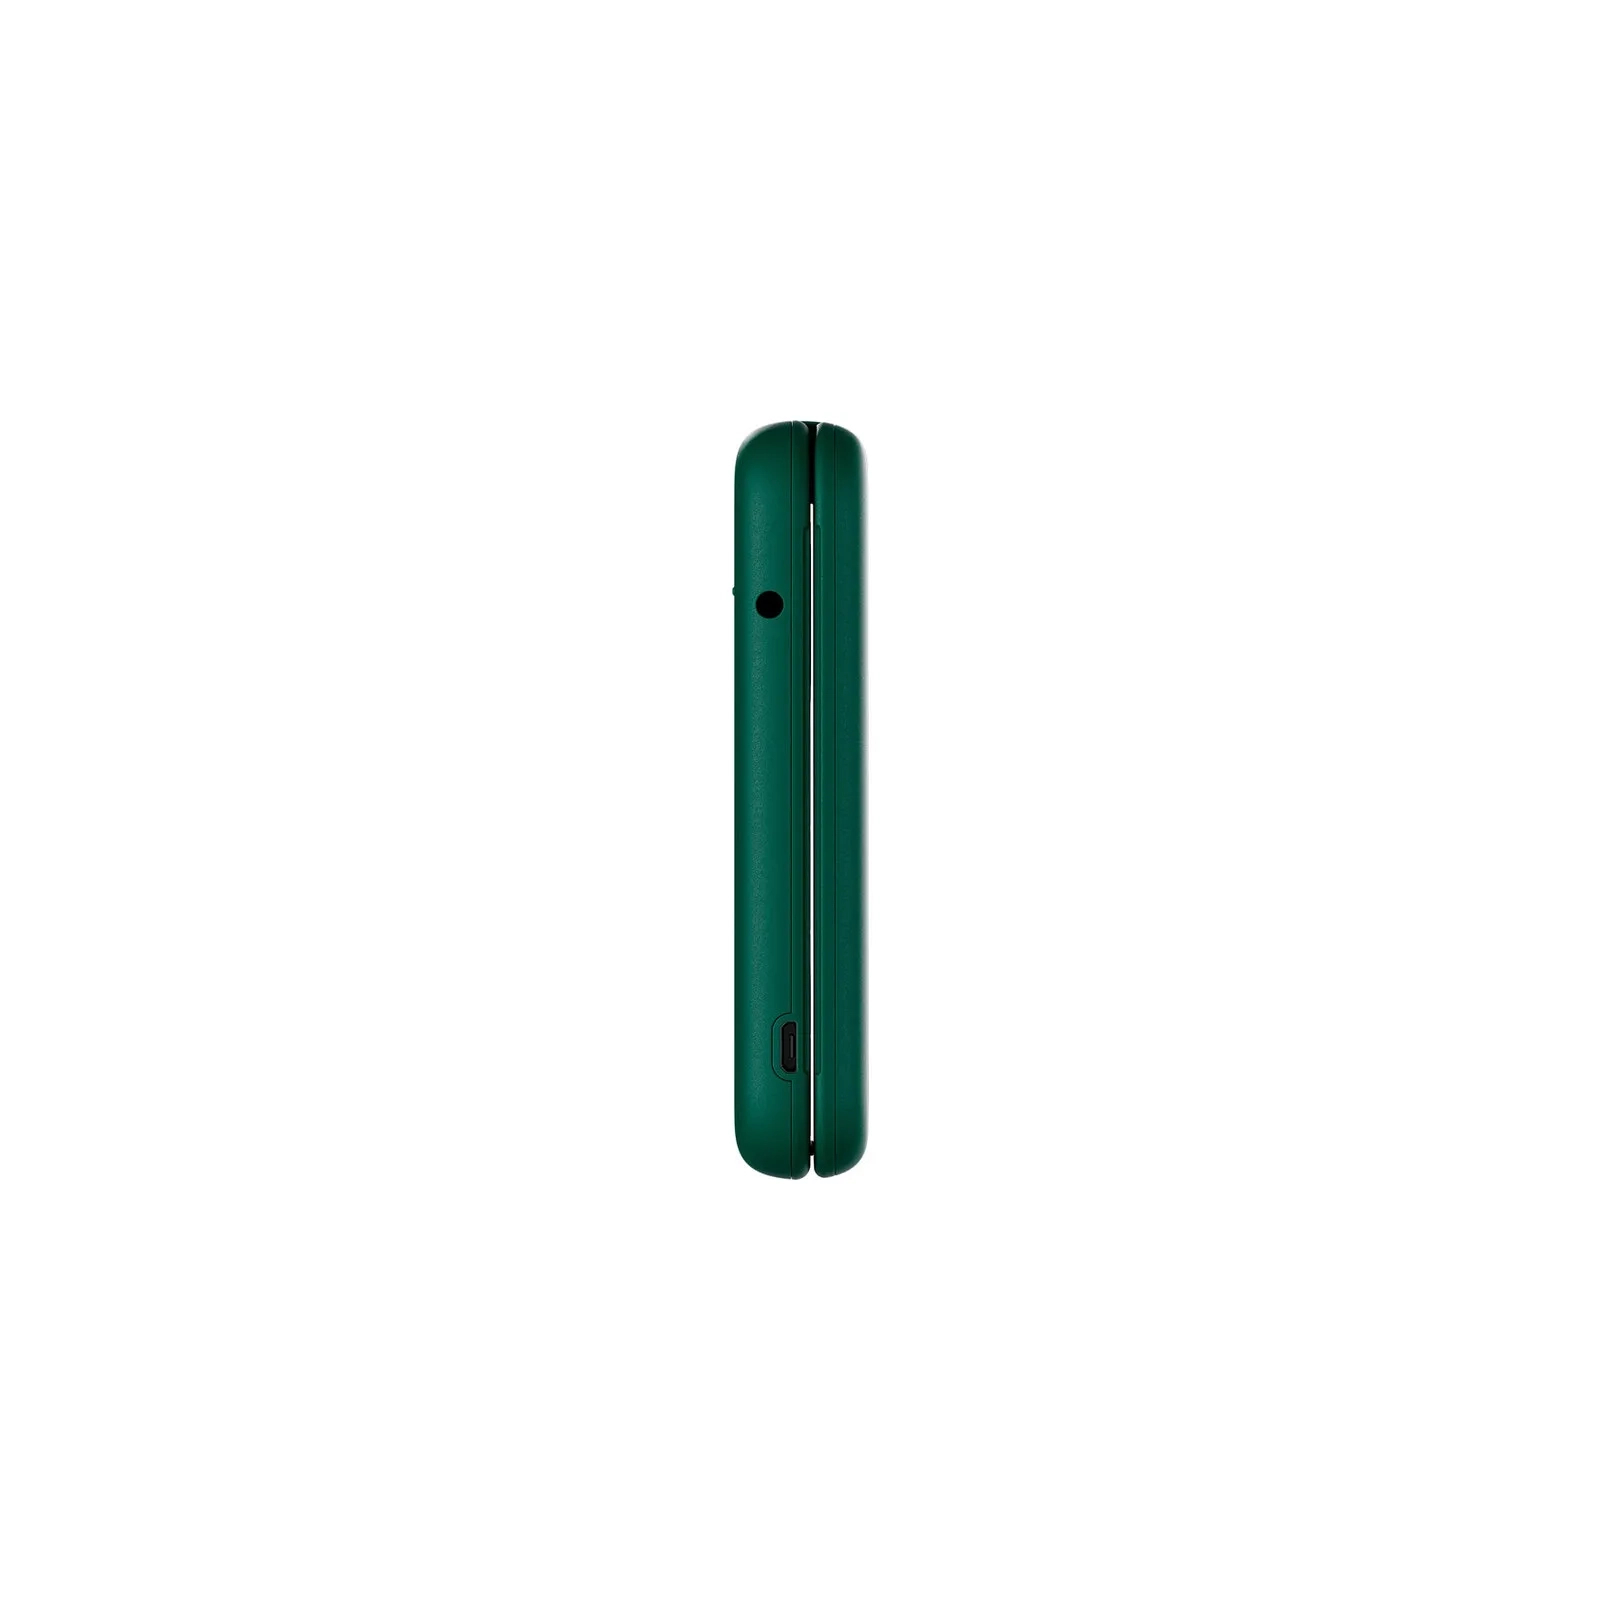 Мобильный телефон Nokia 2660 Flip Green изображение 4